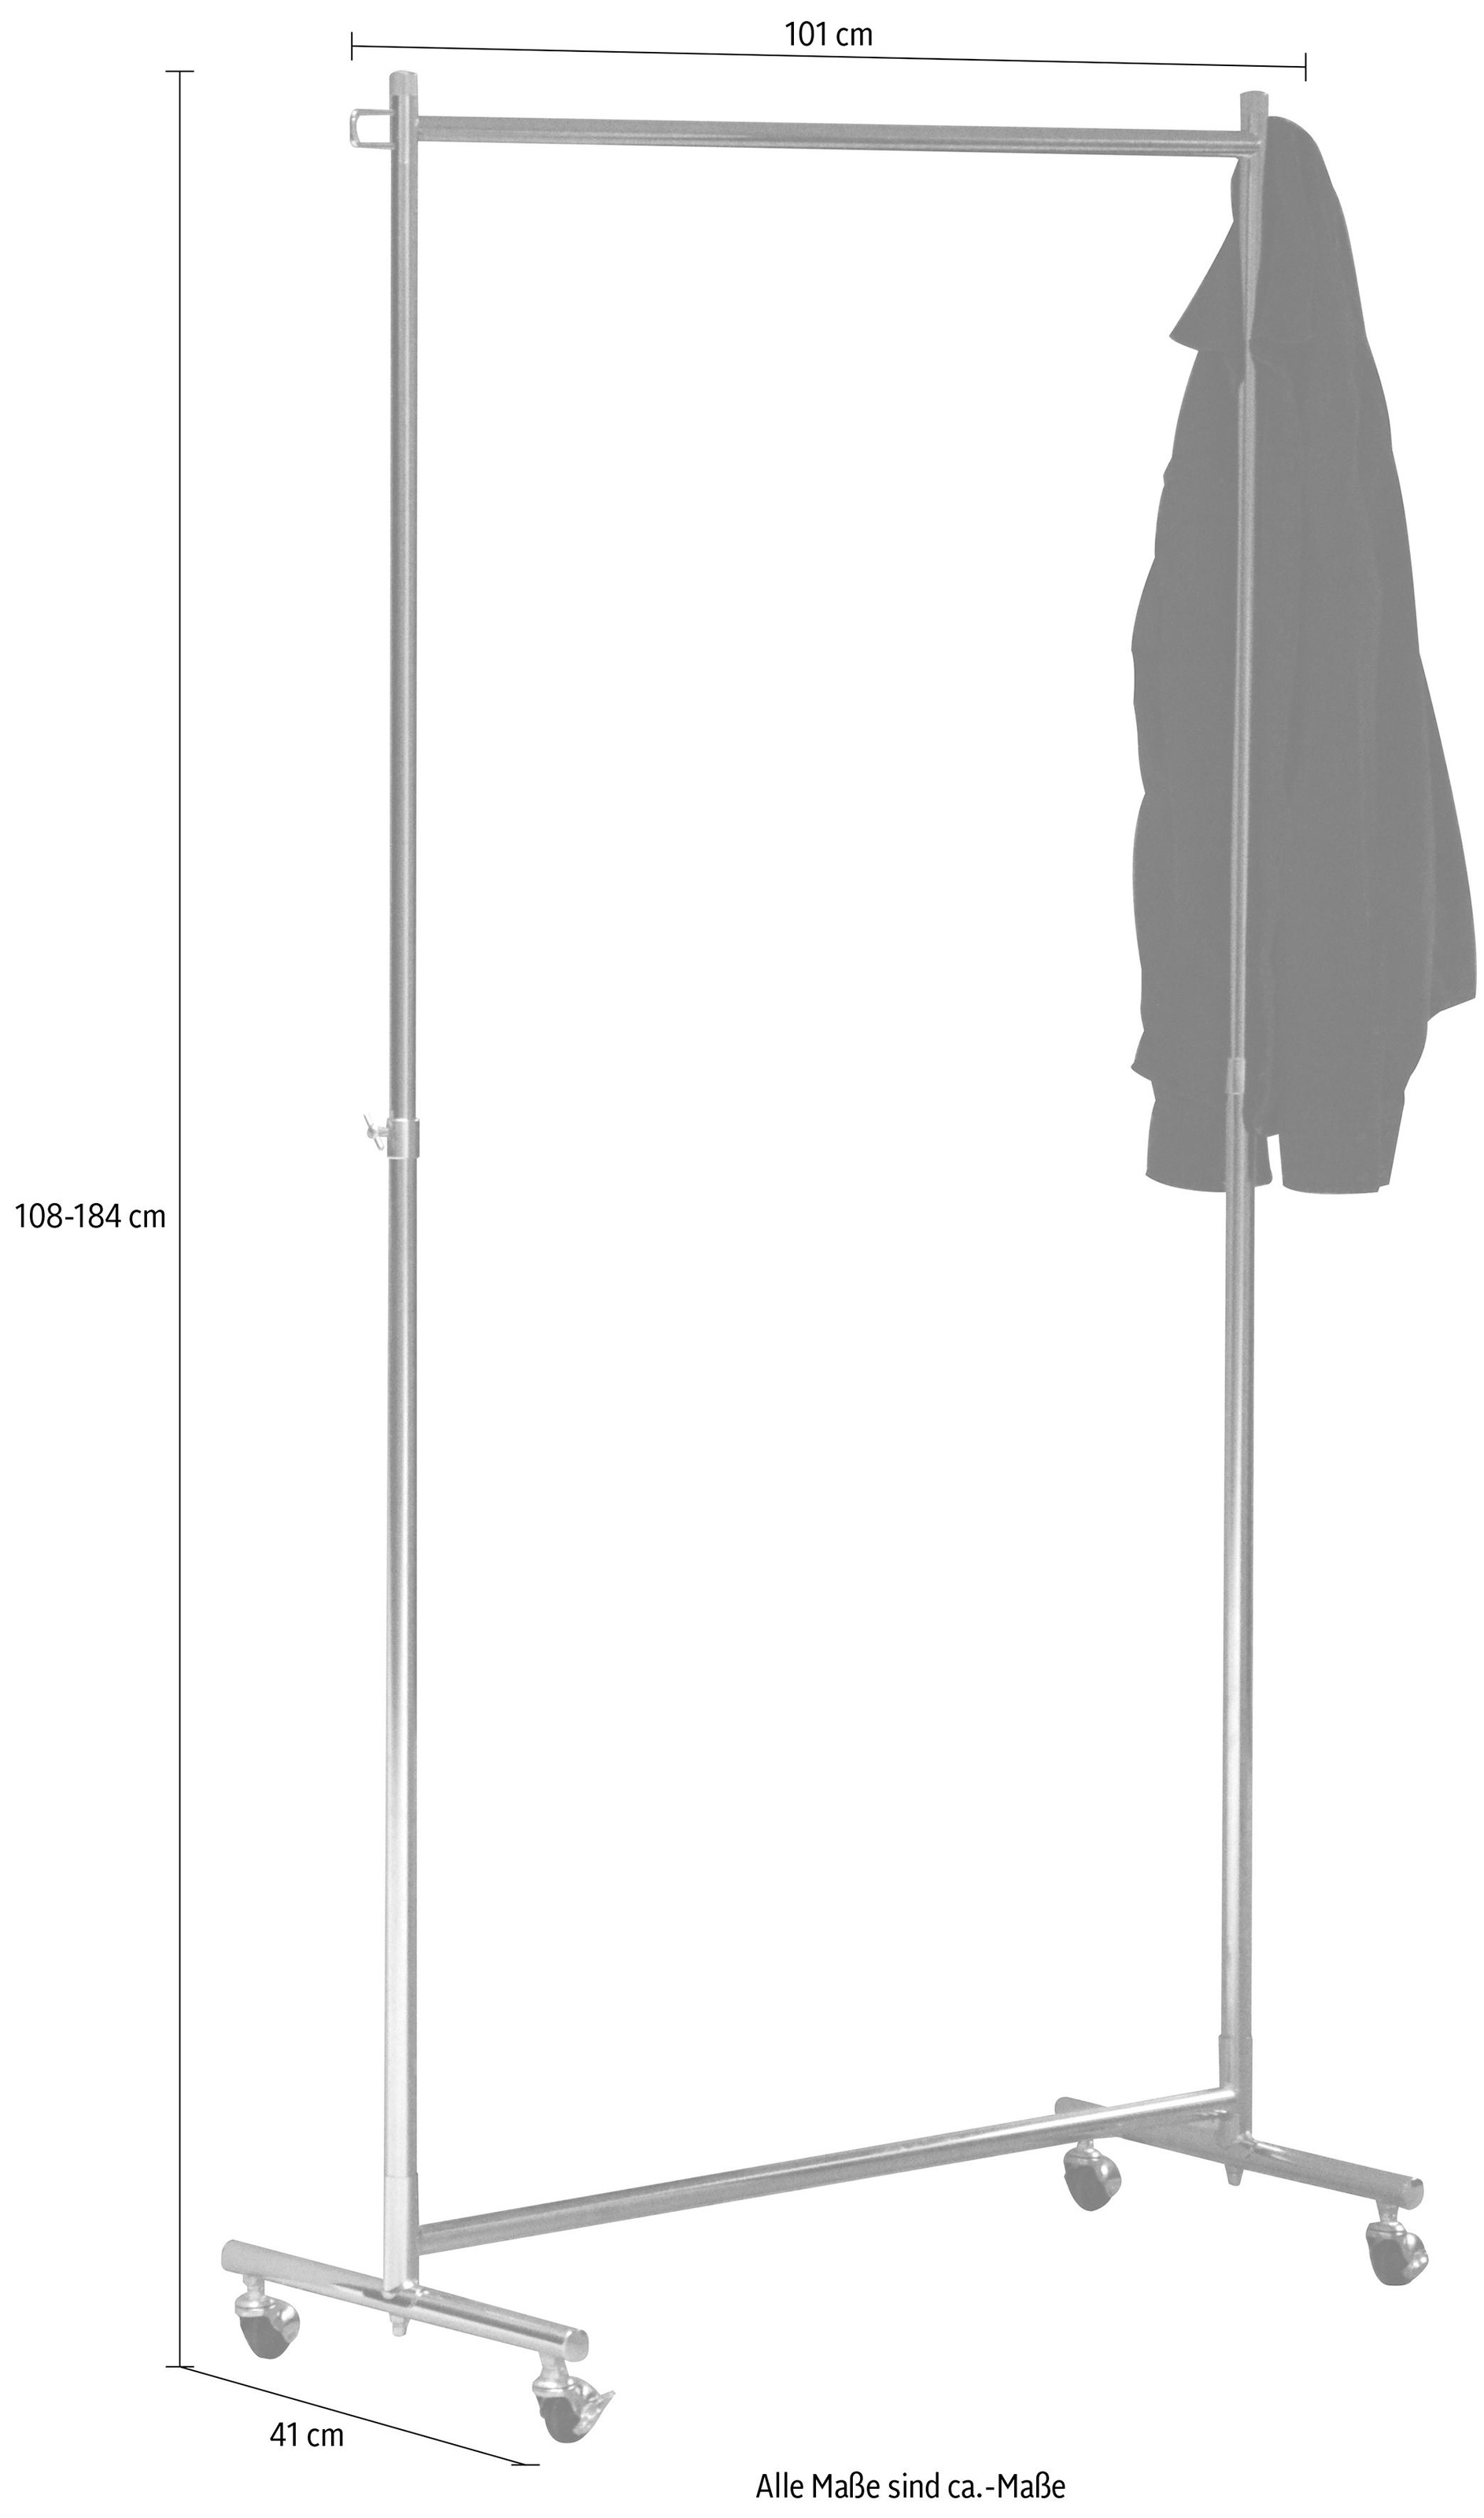 jankurtz Garderobenständer »boston«, auf Rollen, Breite 101 cm